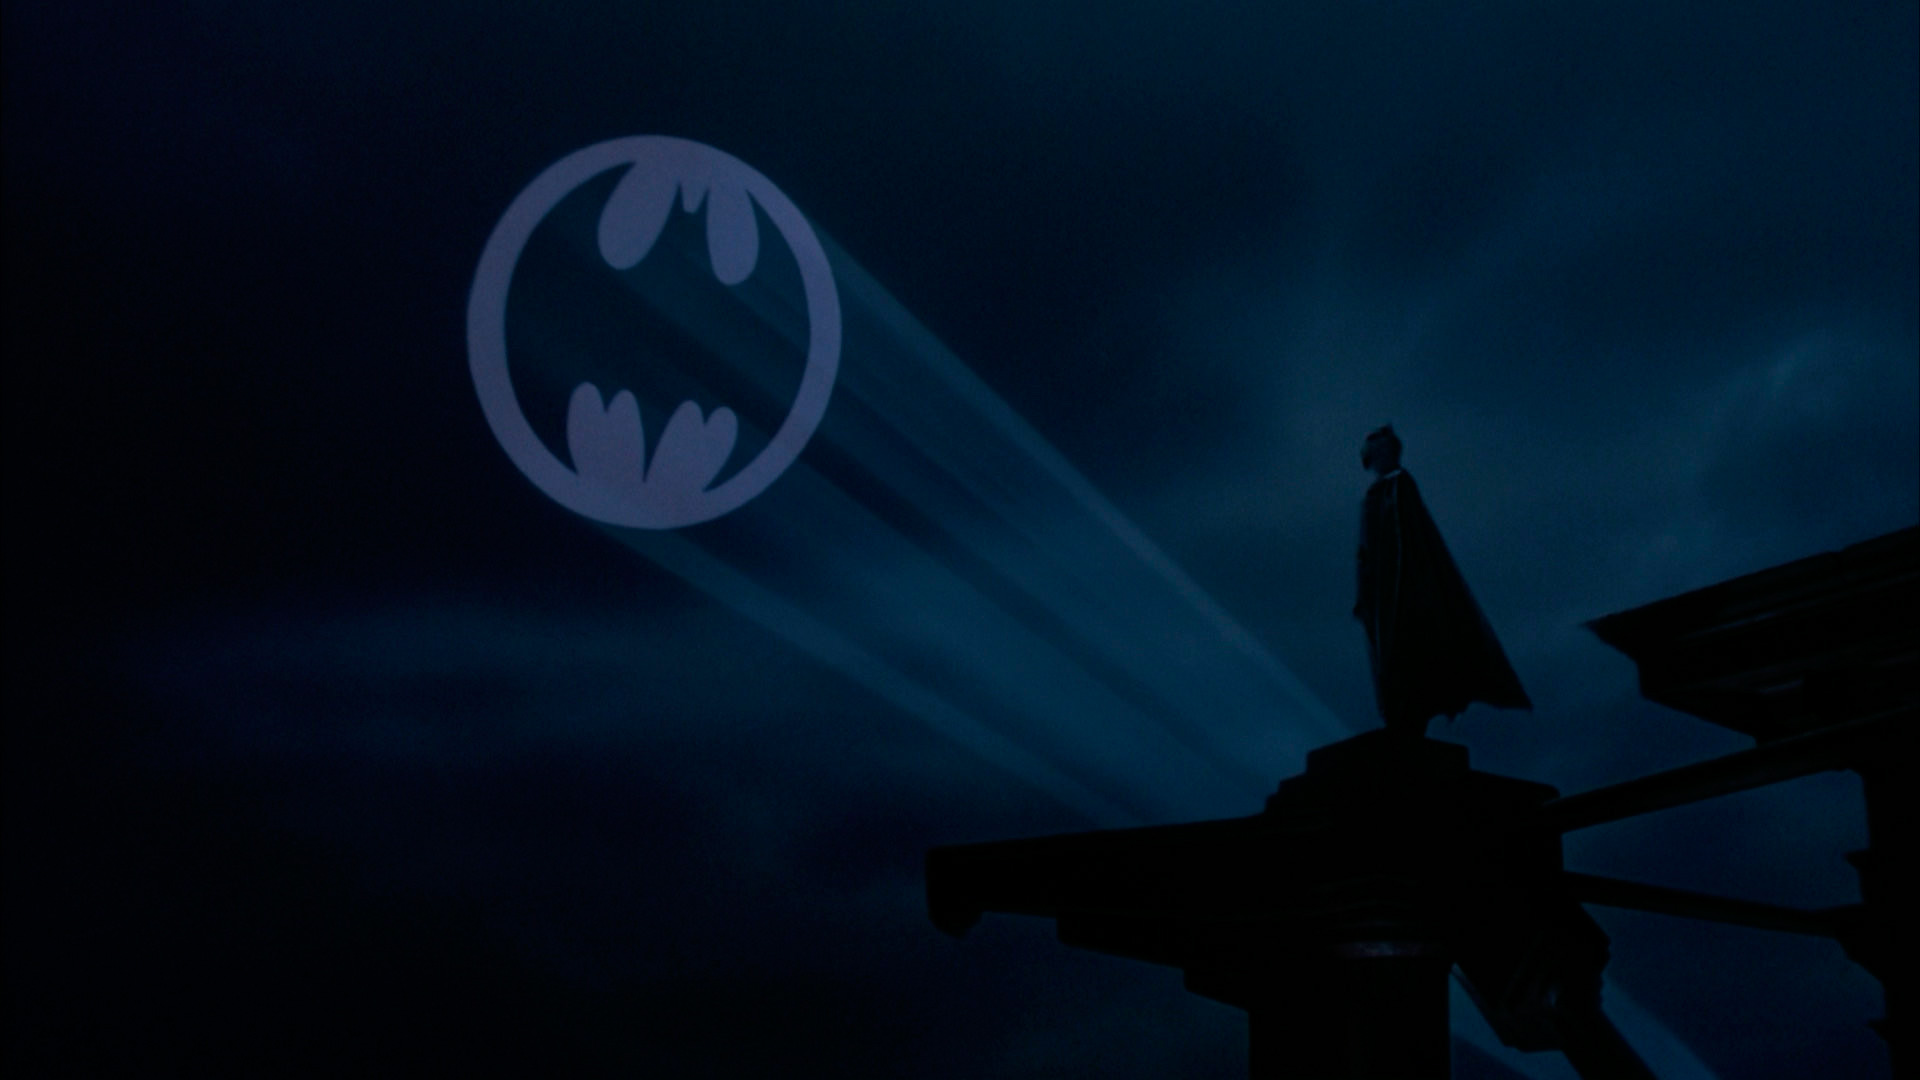 El icónico llamado a Batman se mostrará en homenaje al actor Adam West, quien falleció recientemente e interpretó al popular personaje